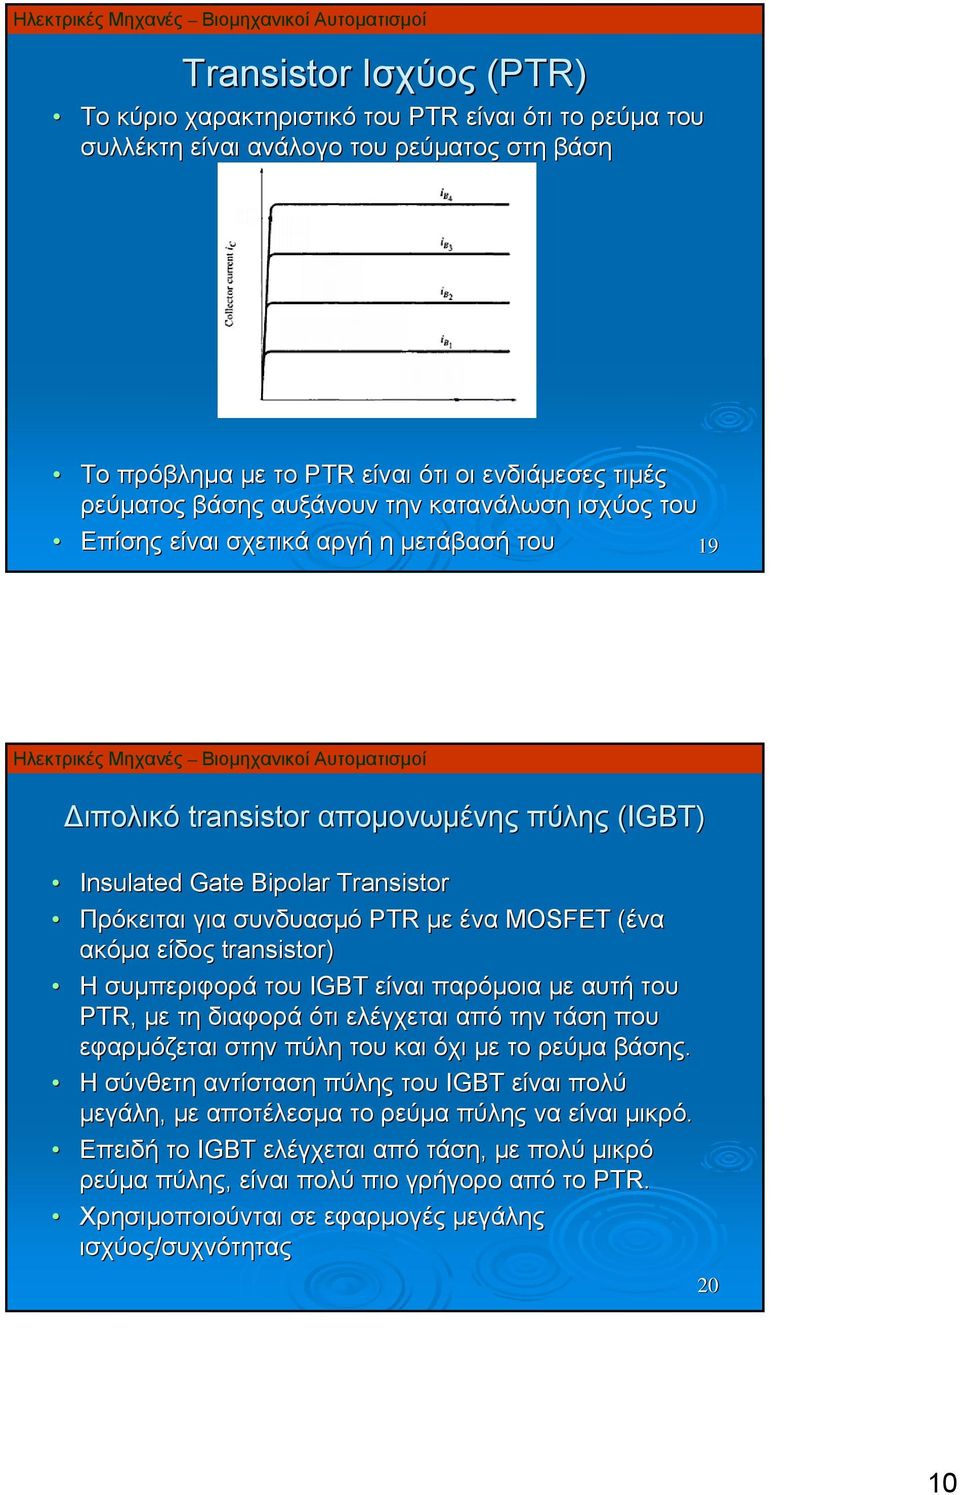 ακόμα είδος transistor) Η συμπεριφορά του IGBT είναι παρόμοια με αυτή του PTR, με τη διαφορά ότι ελέγχεται από την τάση που εφαρμόζεται στην πύλη του και όχι με το ρεύμα βάσης.